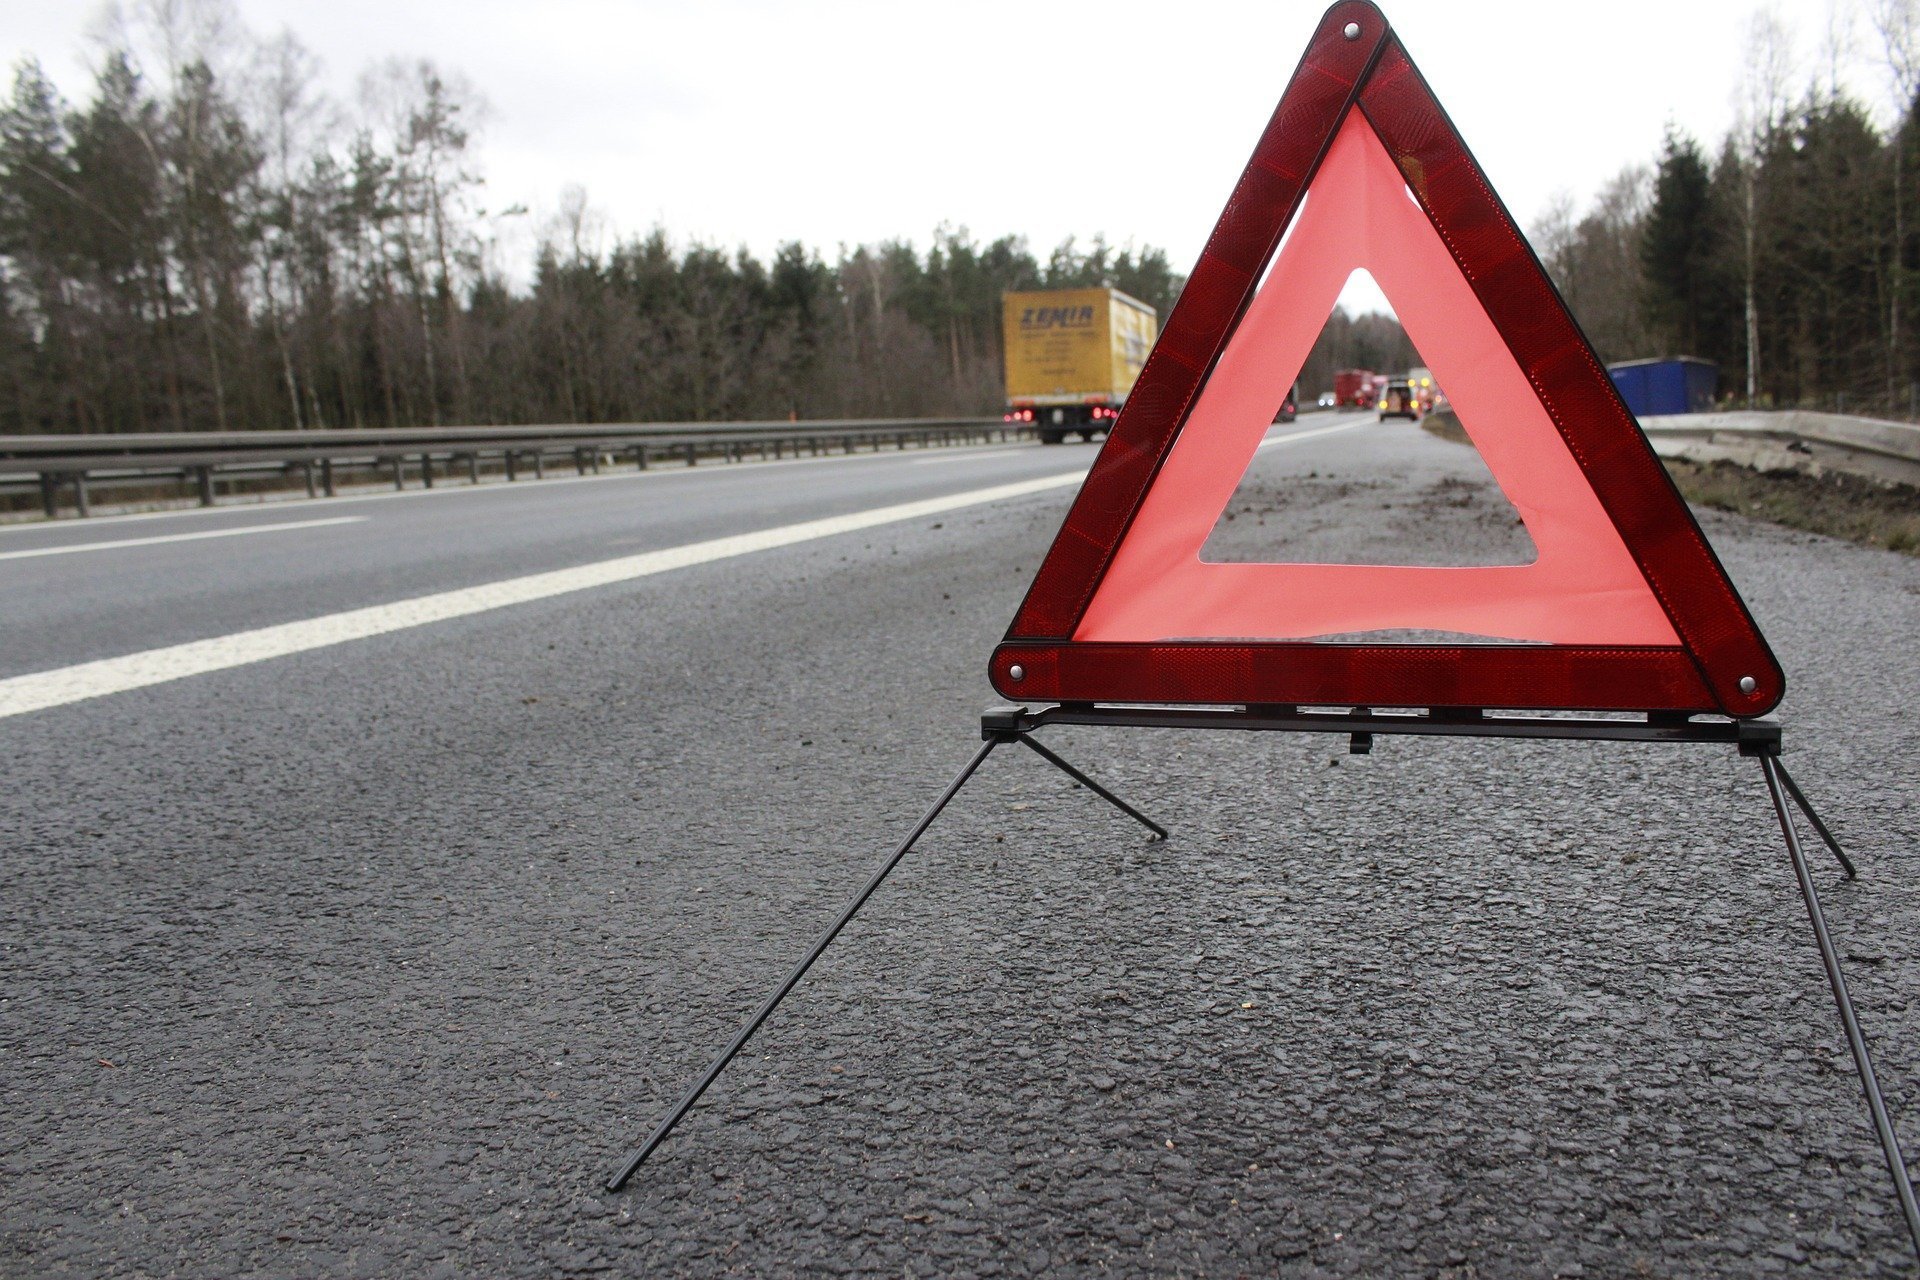 Sudul țării, sub cod galben de burniță: 20 de accidente rutiere au avut loc în judeţele Dolj şi Olt